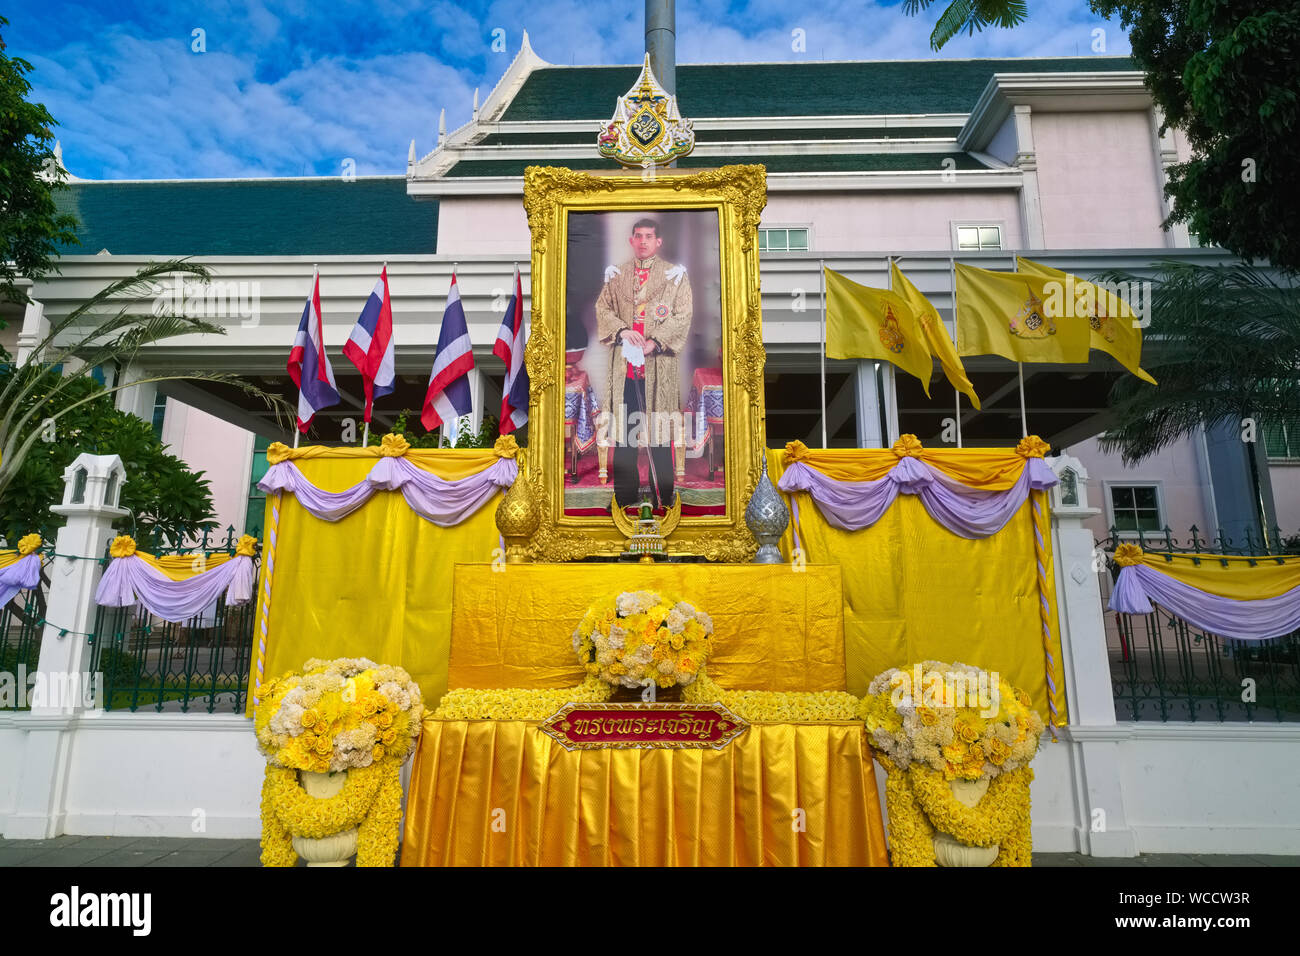 Portrait d'un roi thaïlandais Maha Vajiralongkorn encadrée par des drapeaux thaïlandais (l) et des drapeaux symbolisant la monarchie (r), à un govt. Bldg., Bangkok, Thaïlande Banque D'Images